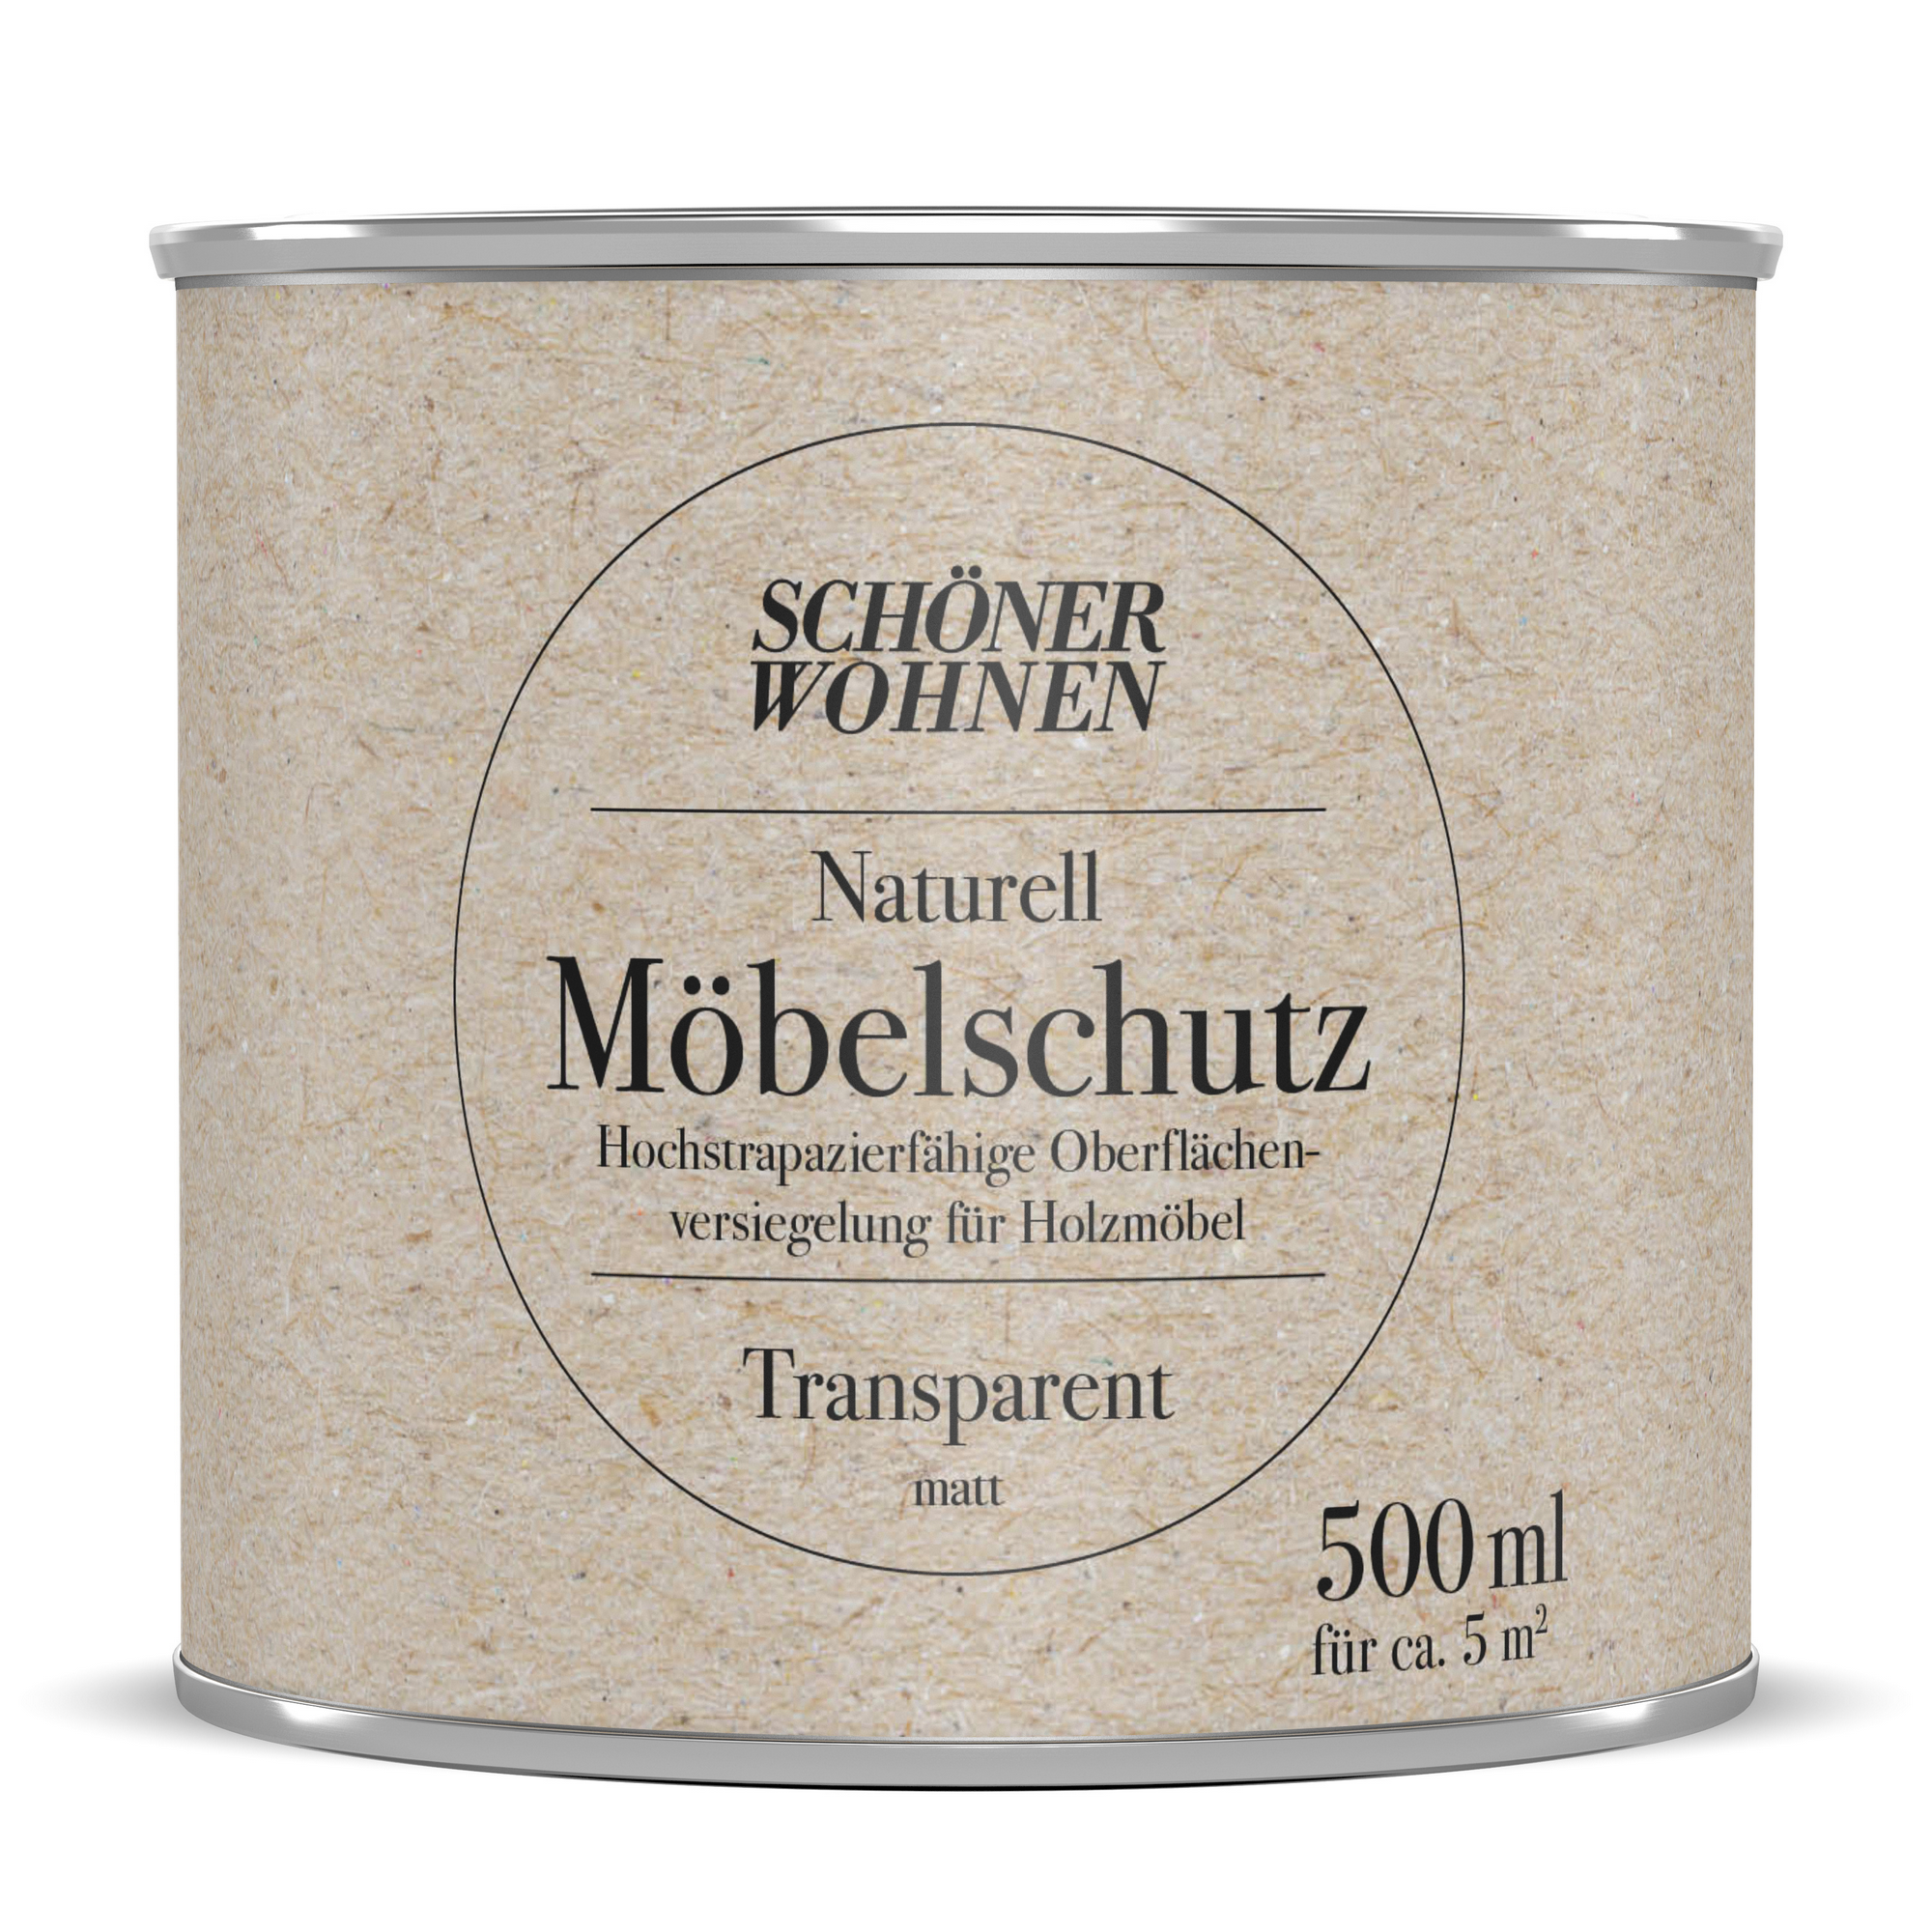 Möbelschutz 'Naturell' transparent matt 500 ml + product picture